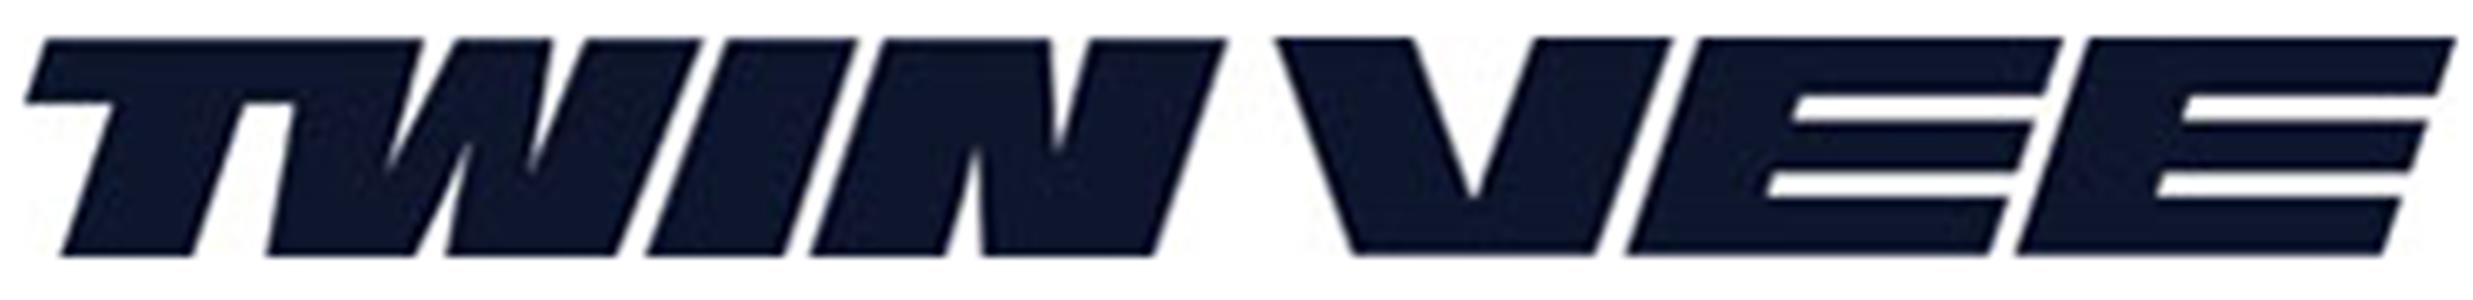 VEEE logo